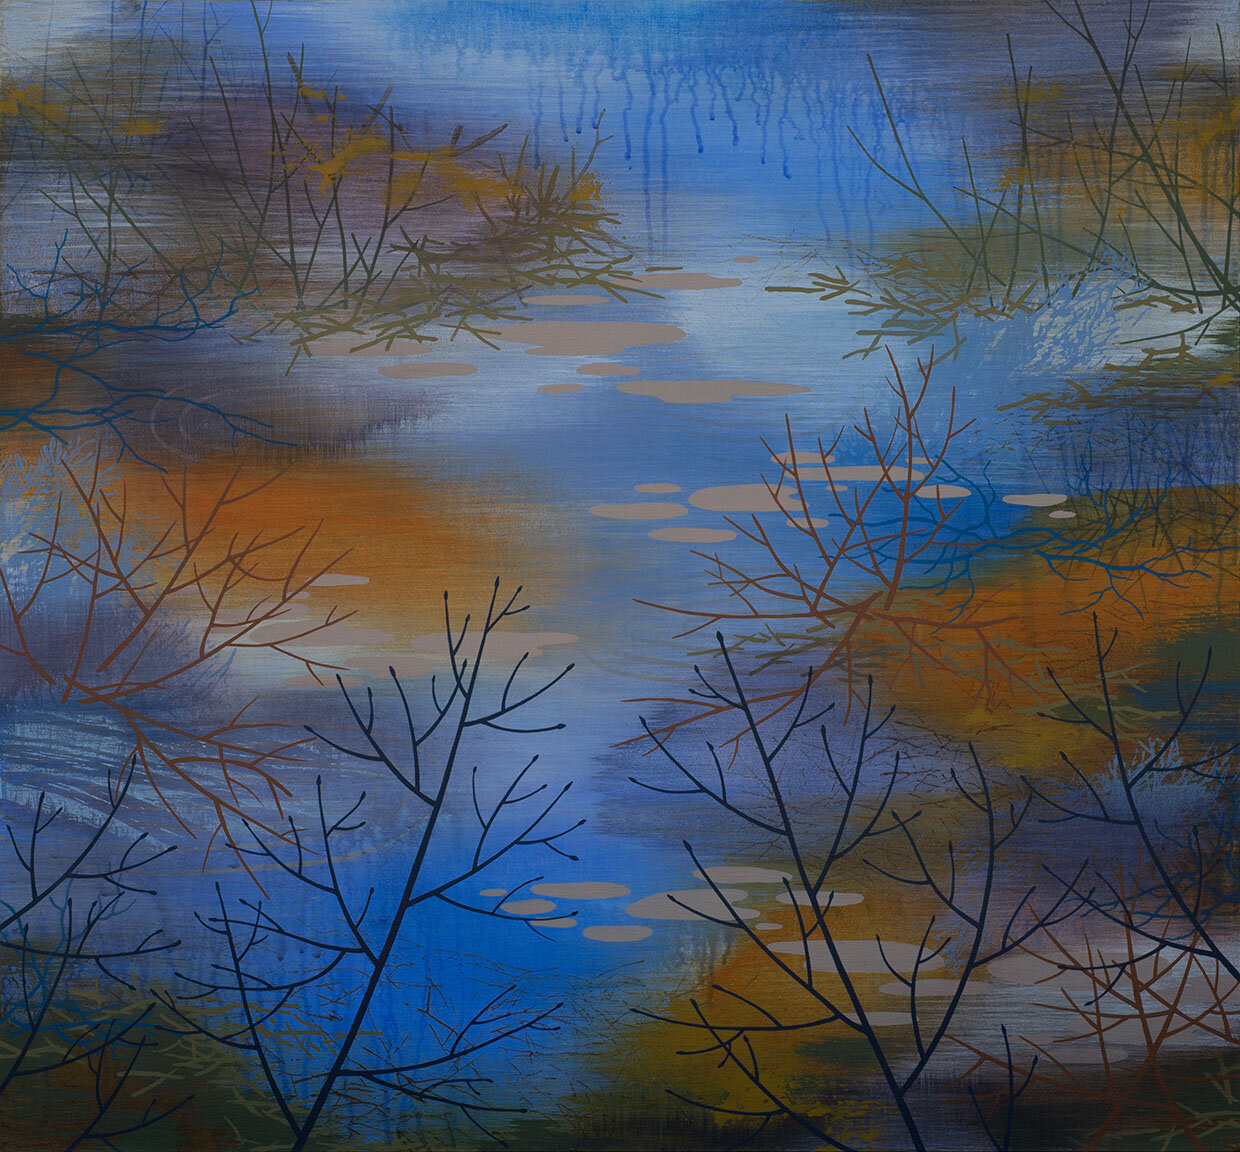   River Edge   Acrylic on canvas 28 x 30 x 1.5” 